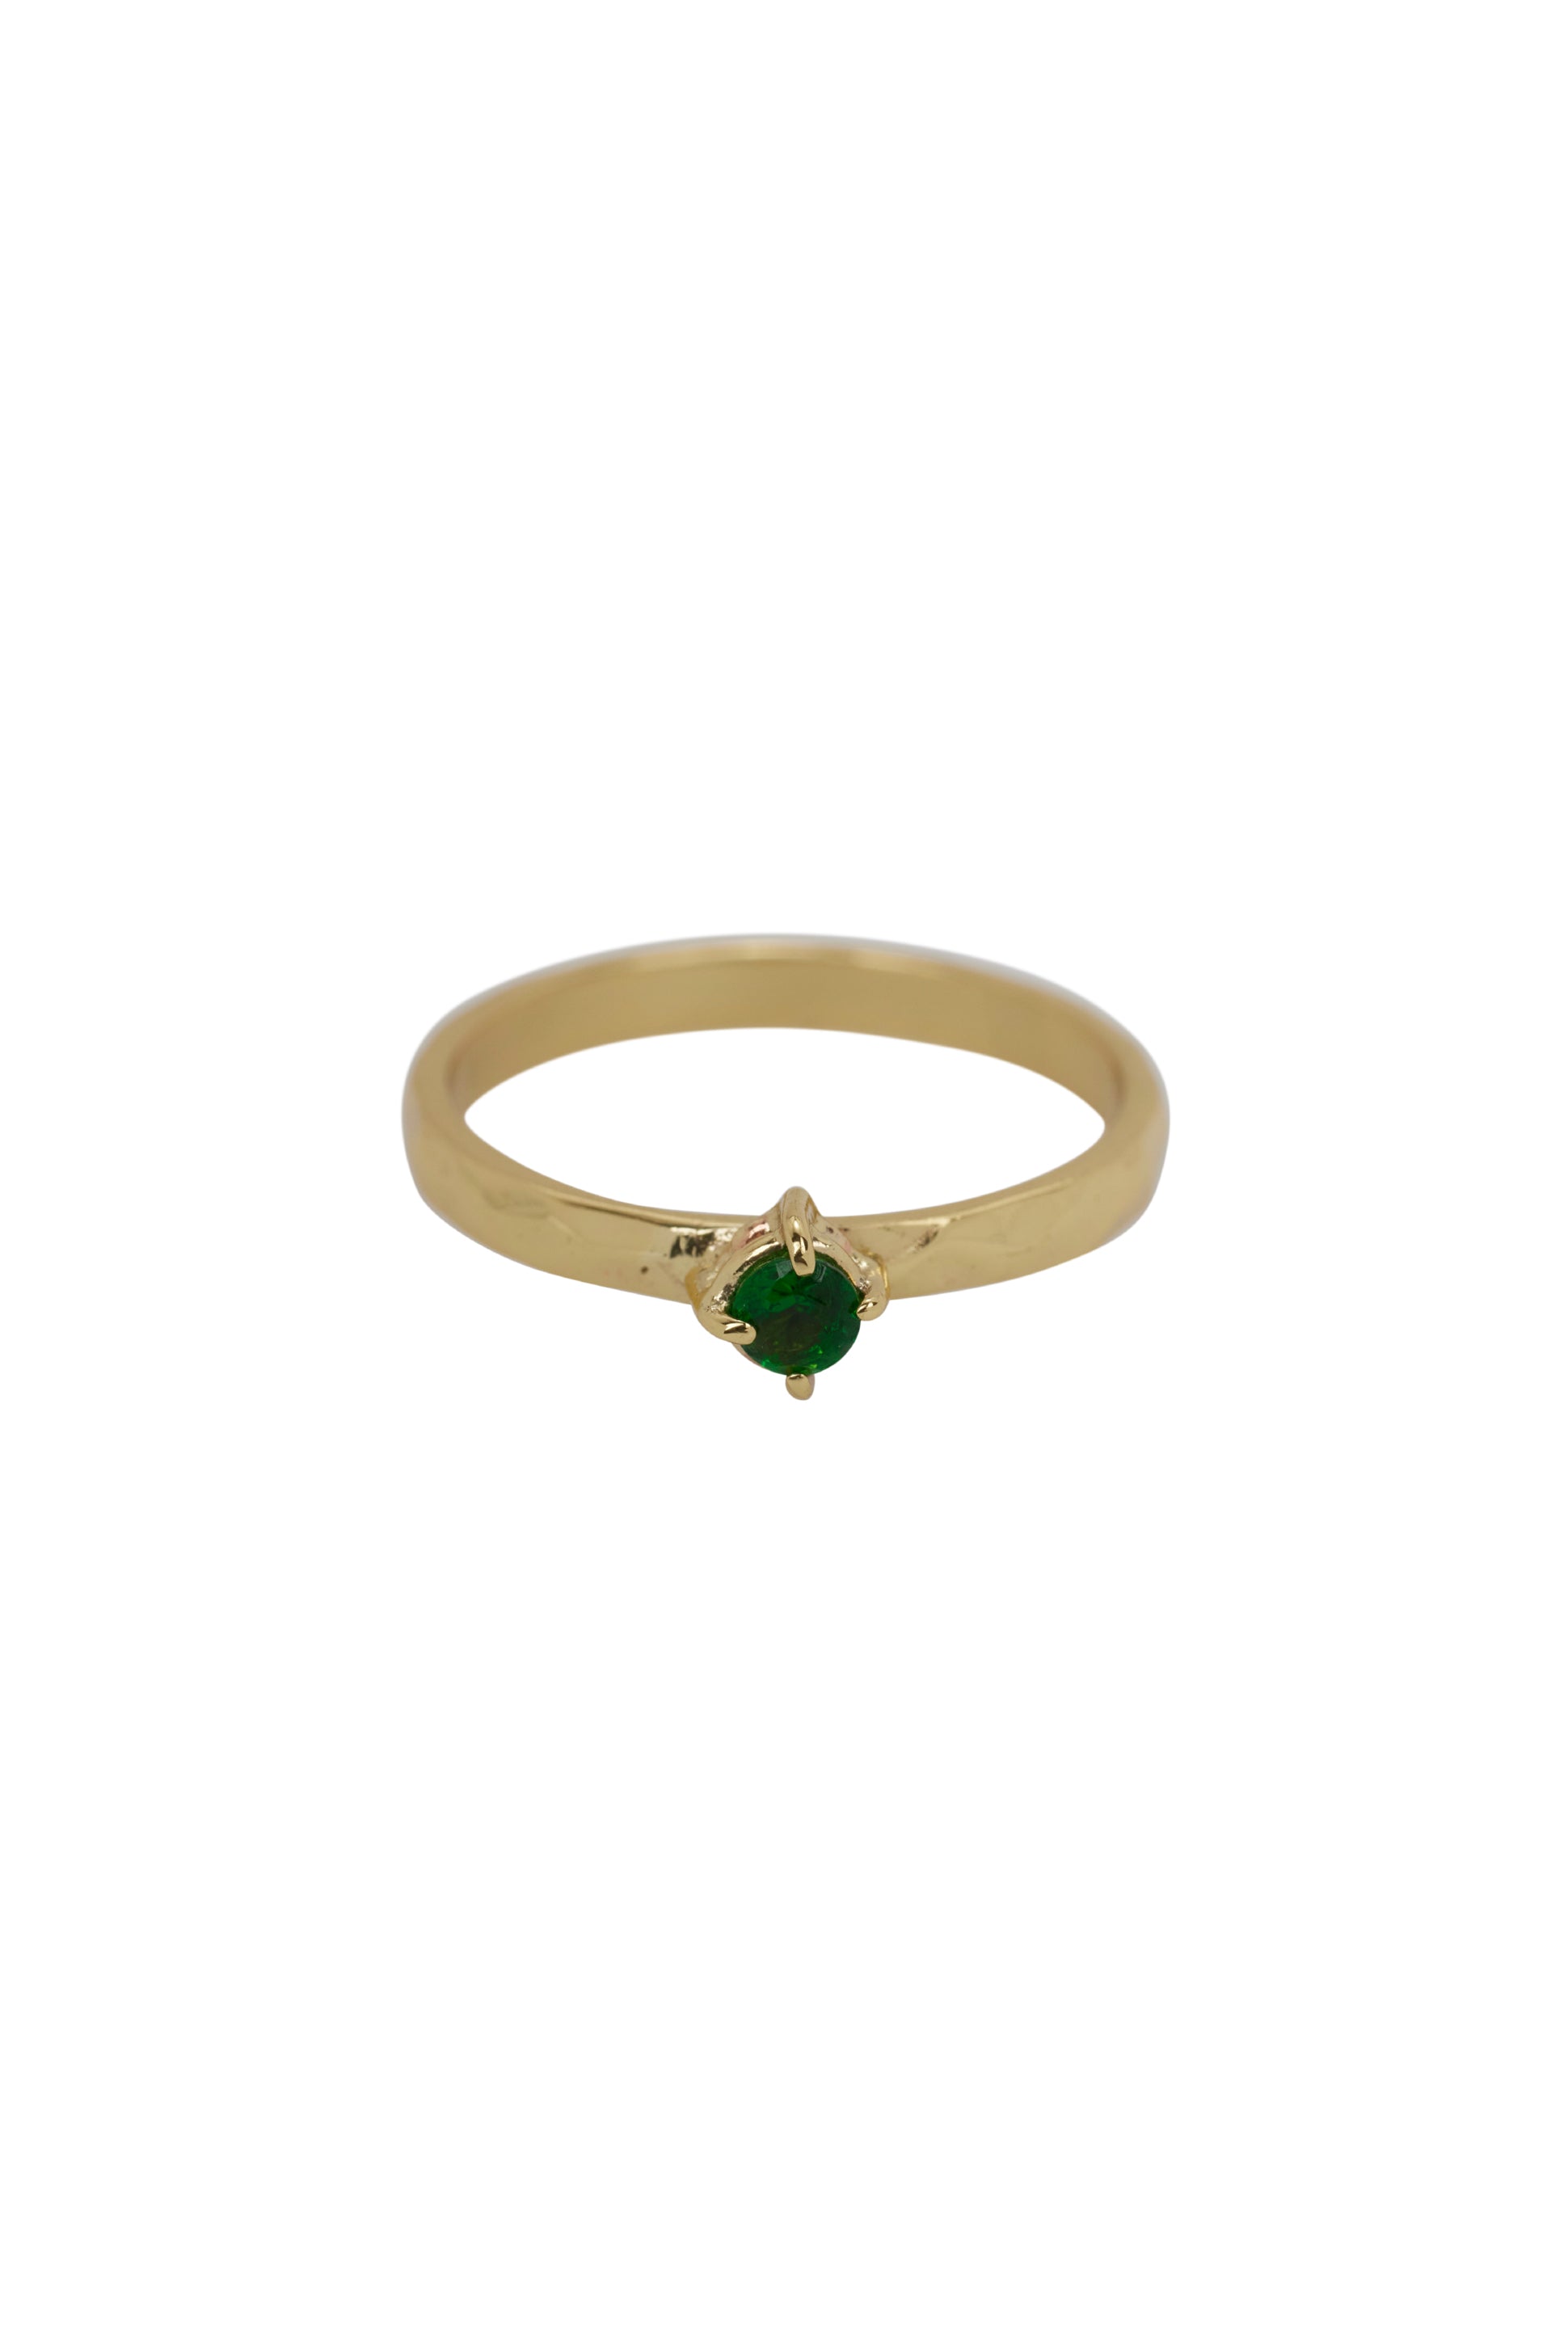 Xzota/ Ringen - Green zircon - Brass